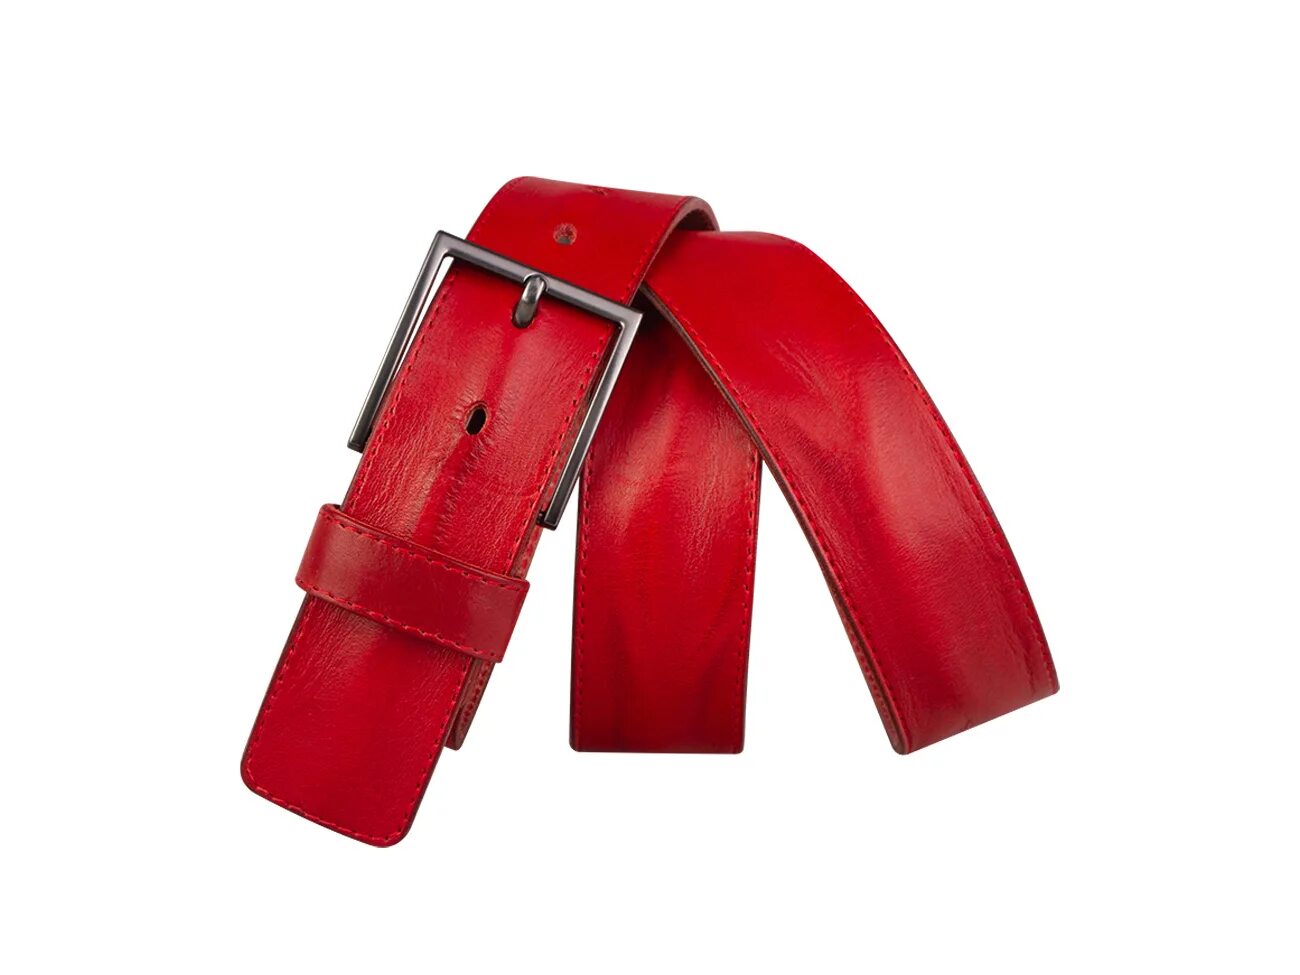 Ремень Mayer b40-1200. Кожаный ремень b30-144 (рыжий). Красный кожаный ремень мужской. Мужские джинсы с красным ремнём.